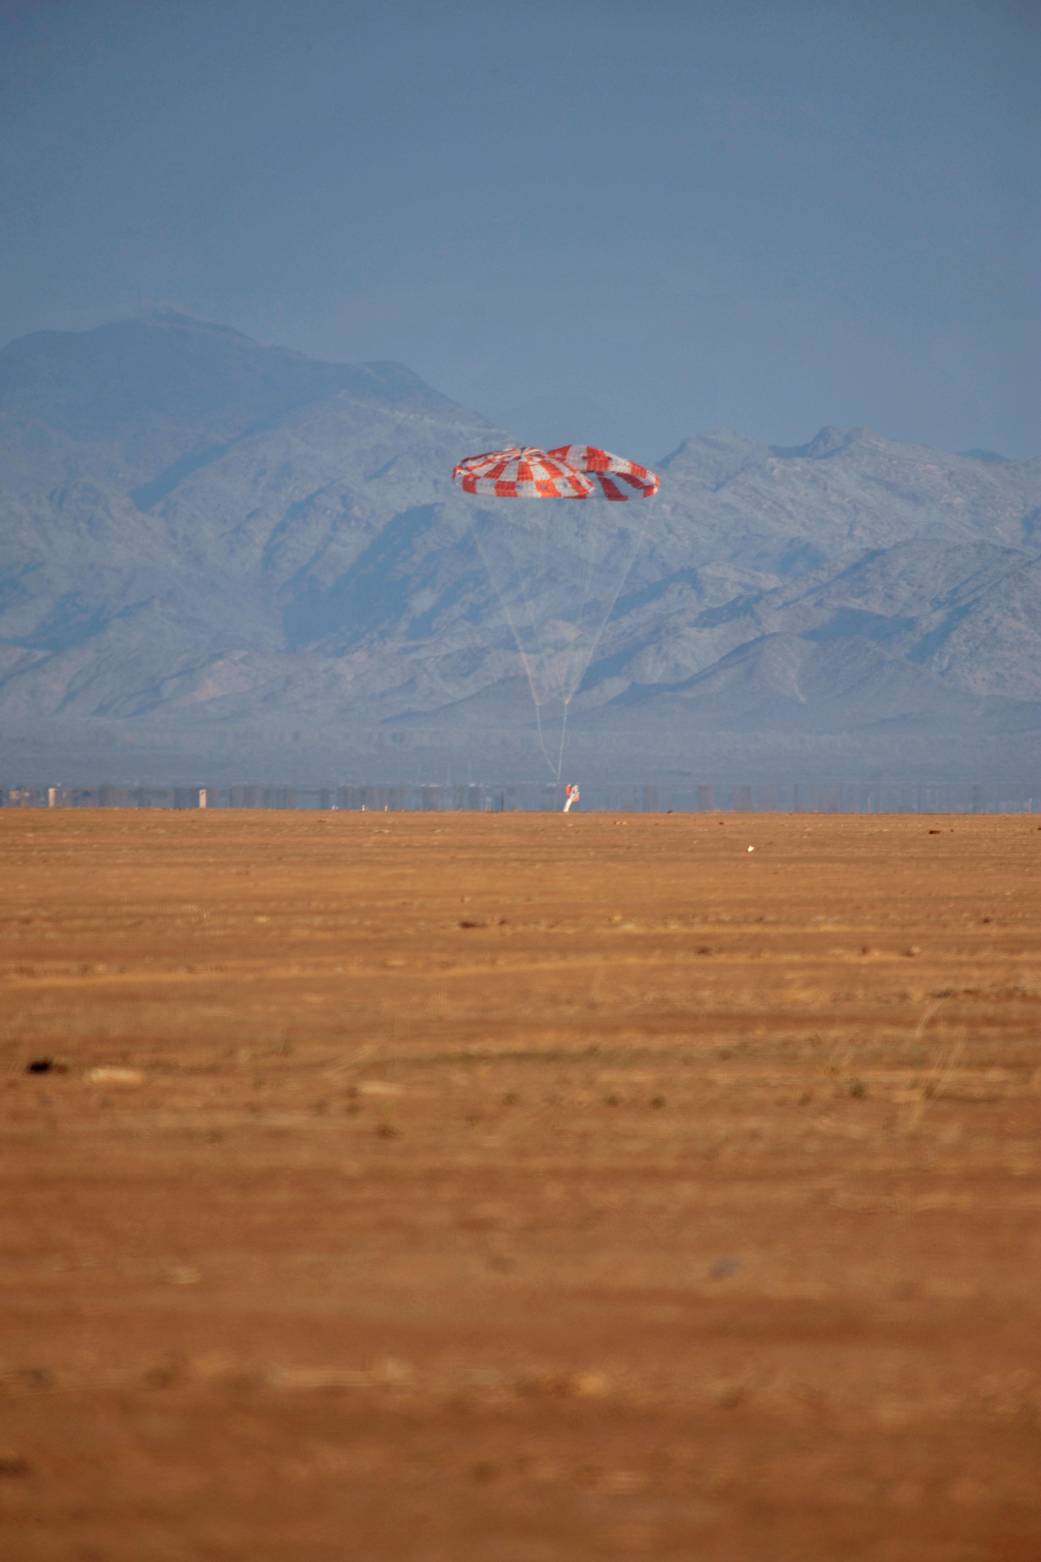 Orion Parachute Test, Dec. 20, 2011